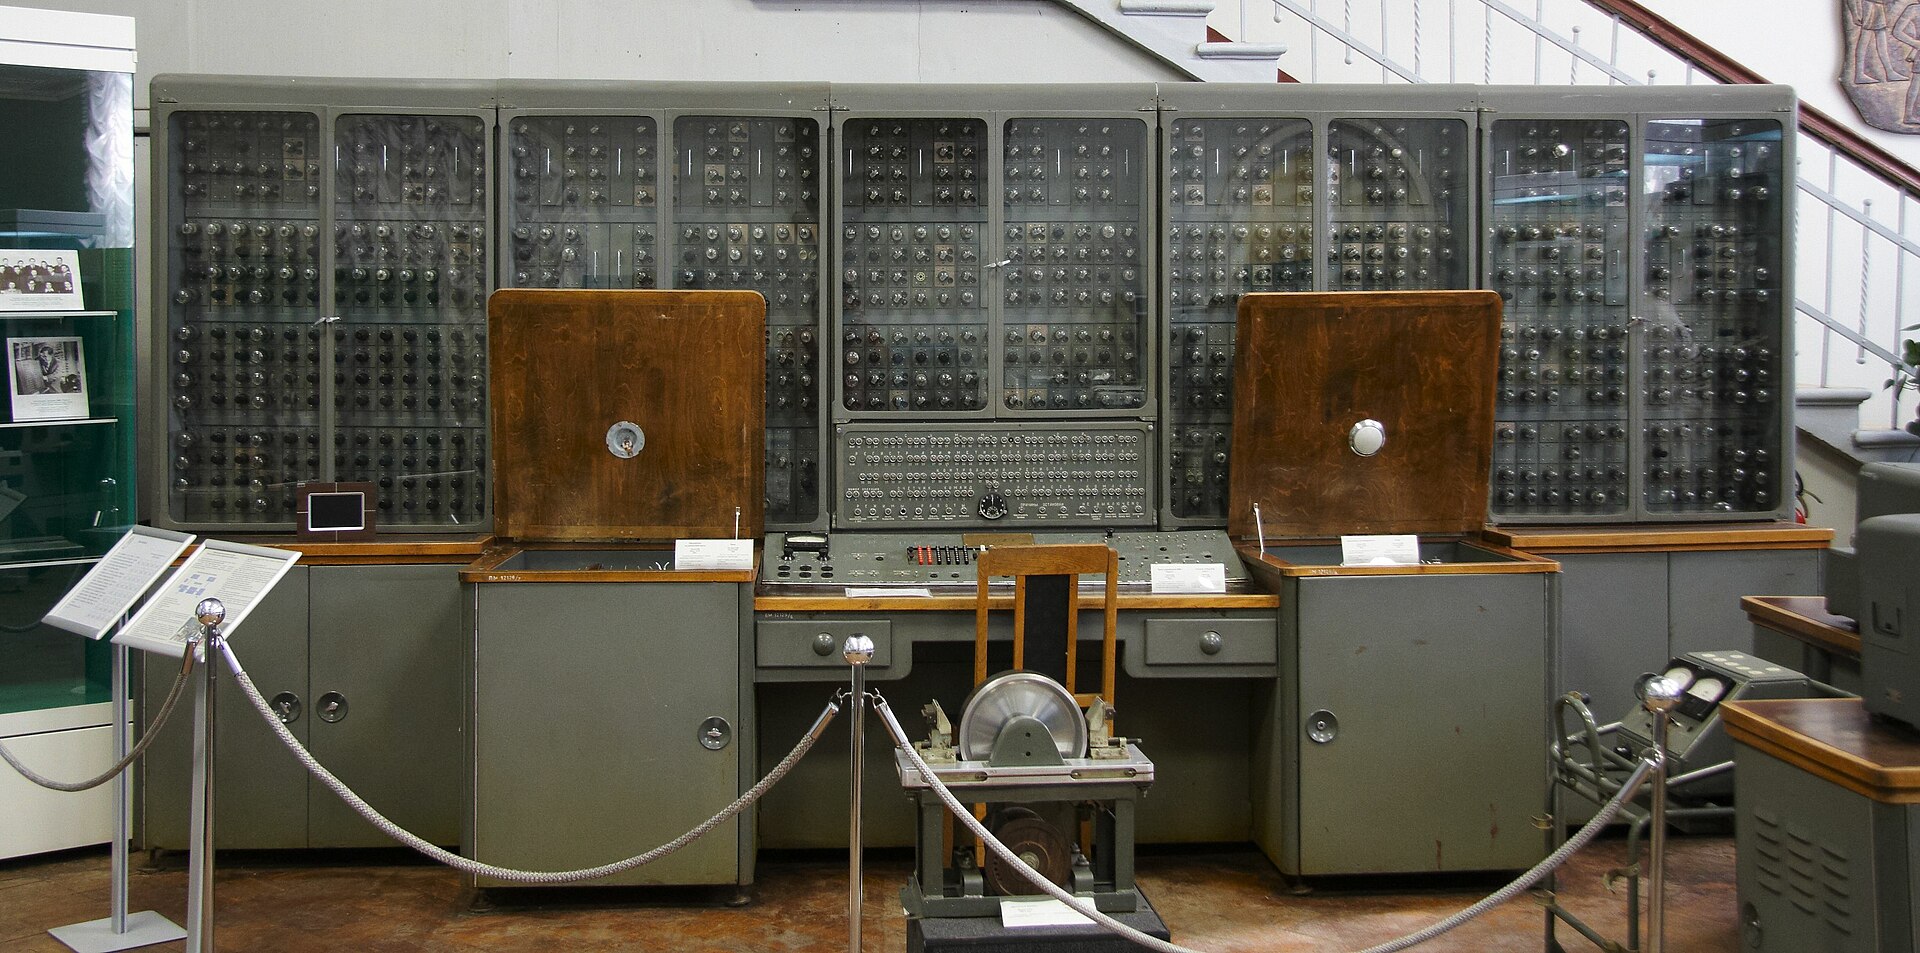 ЭВМ "Урал-1", один из первых серийных компьютеров в СССР